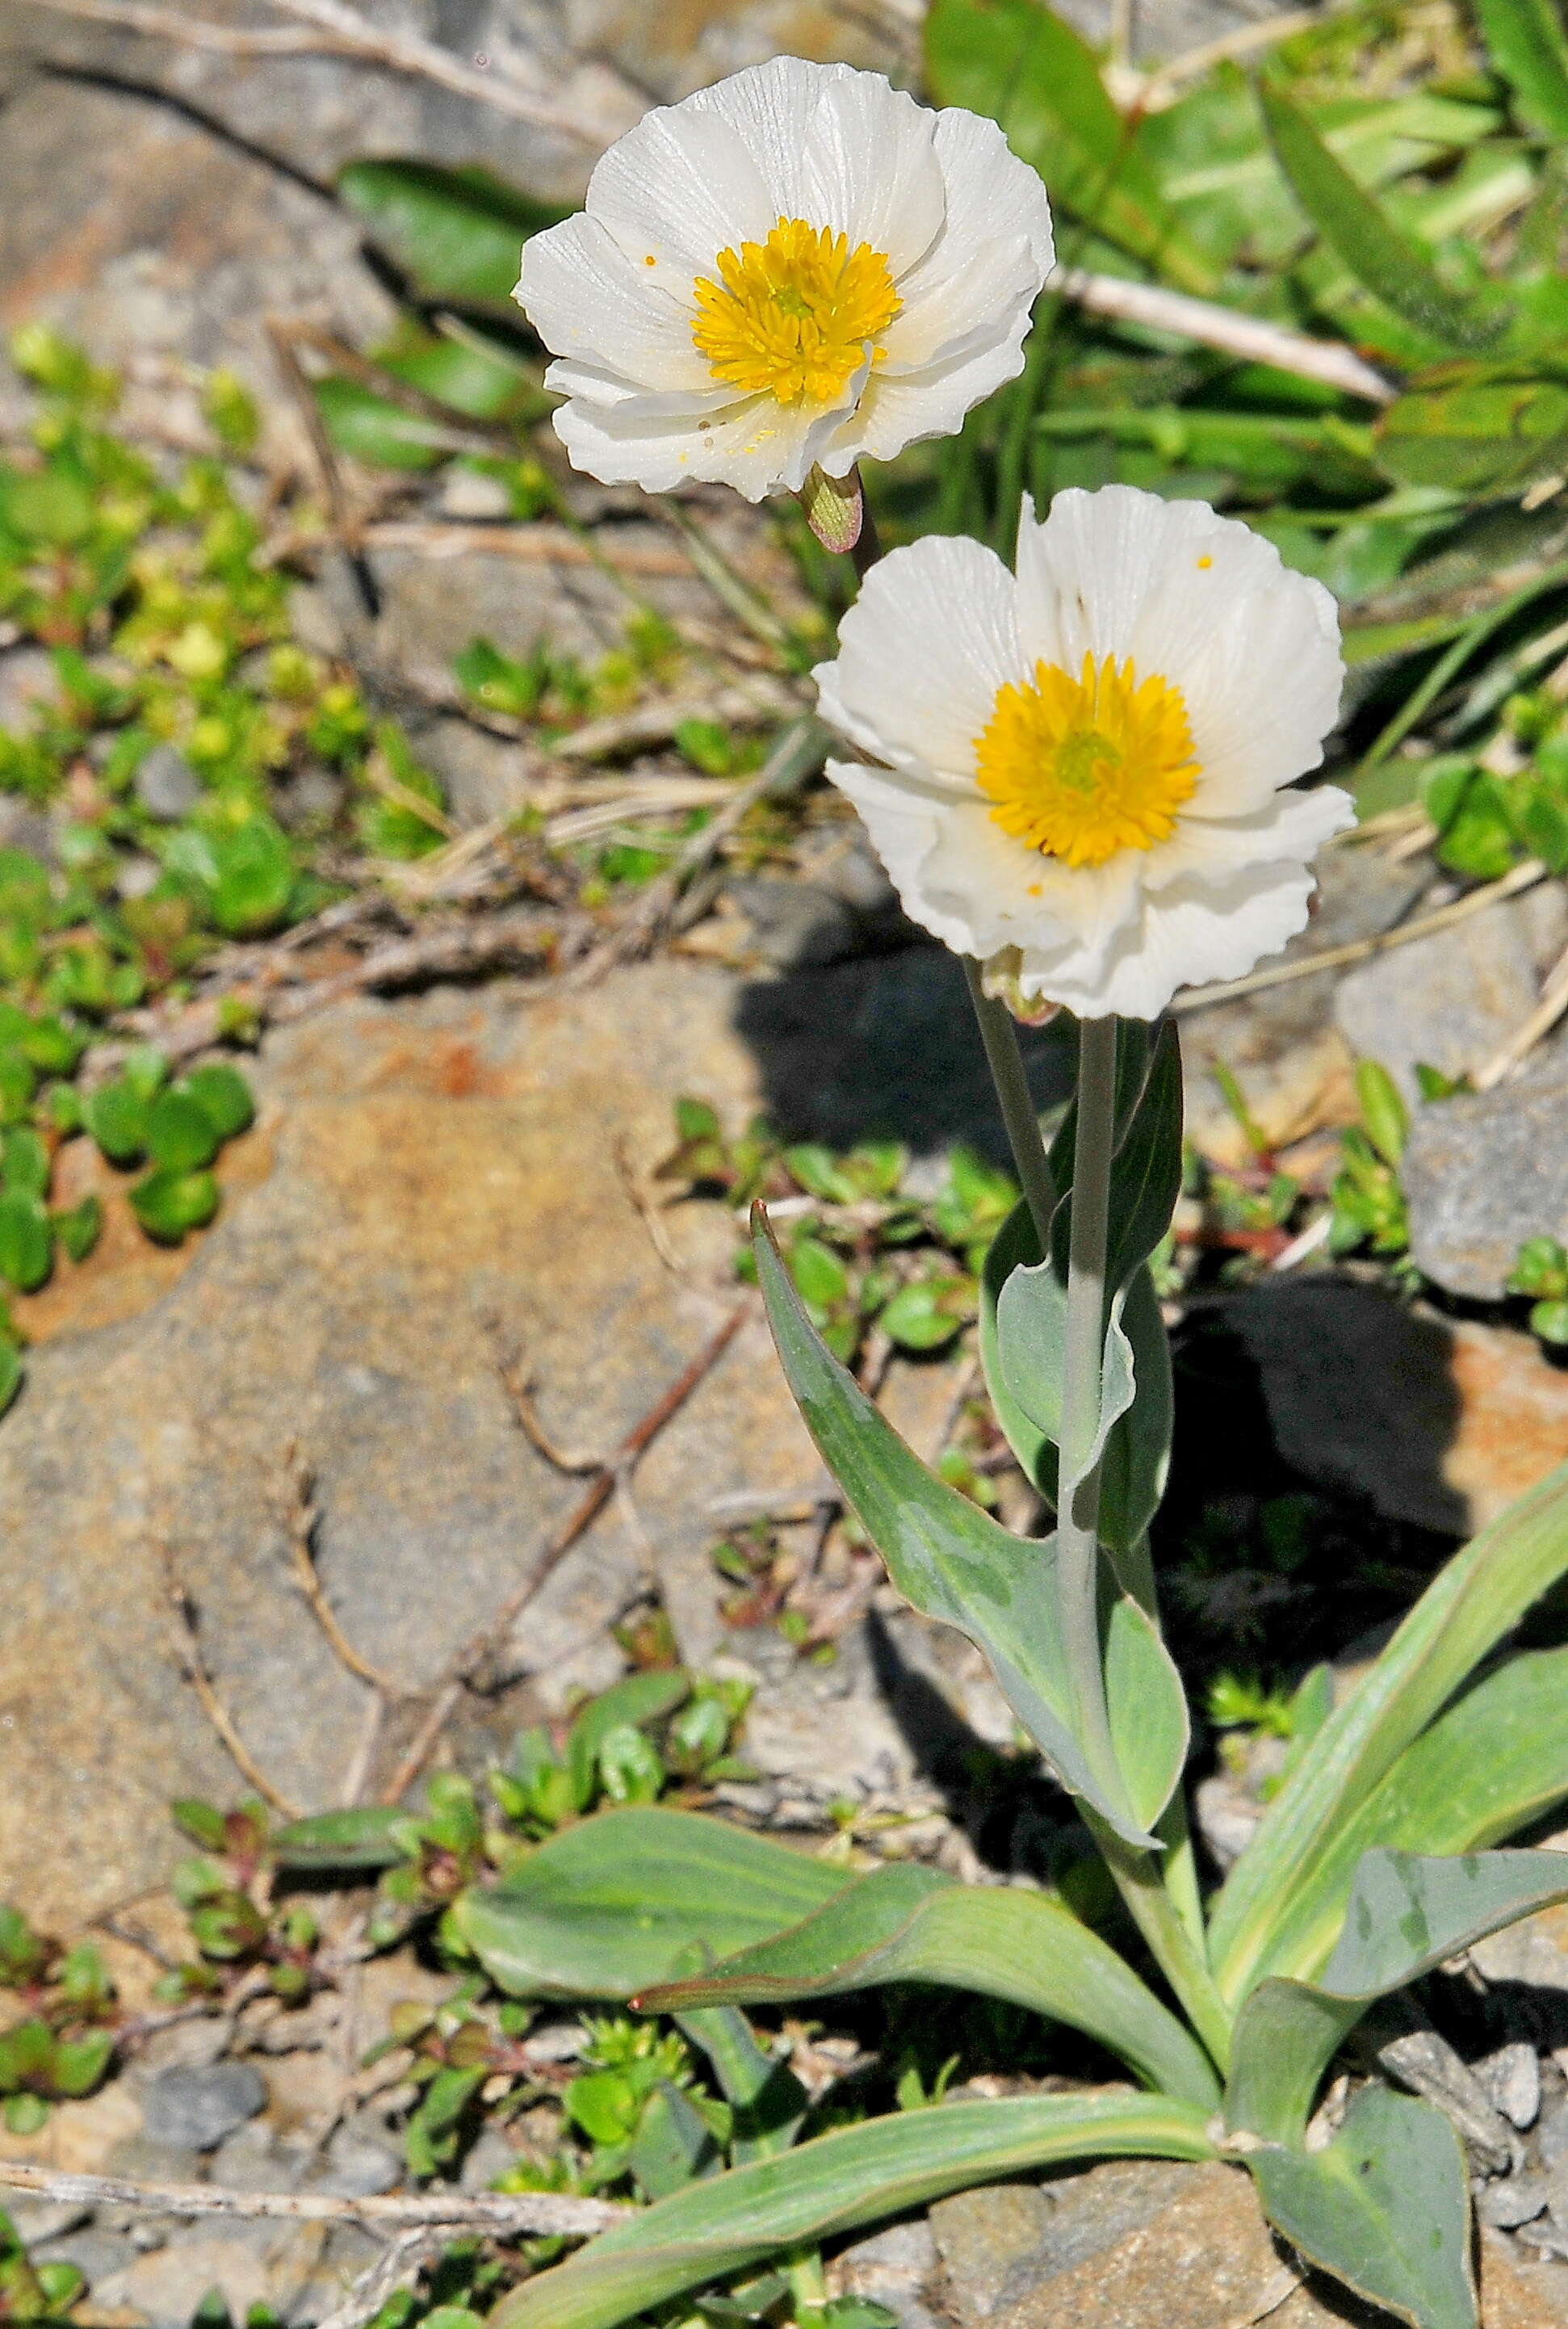 Image of Ranunculus amplexicaulis L.